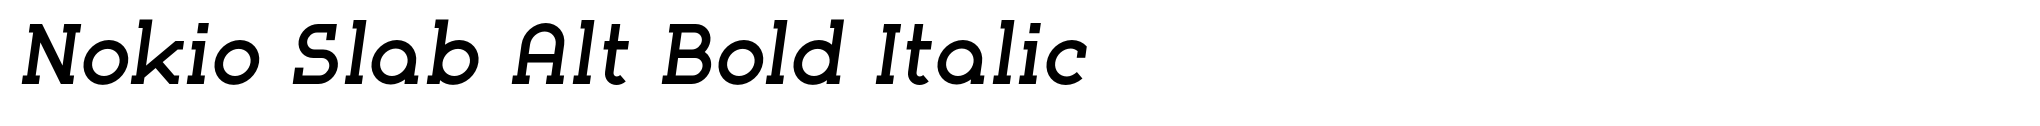 Nokio Slab Alt Bold Italic image